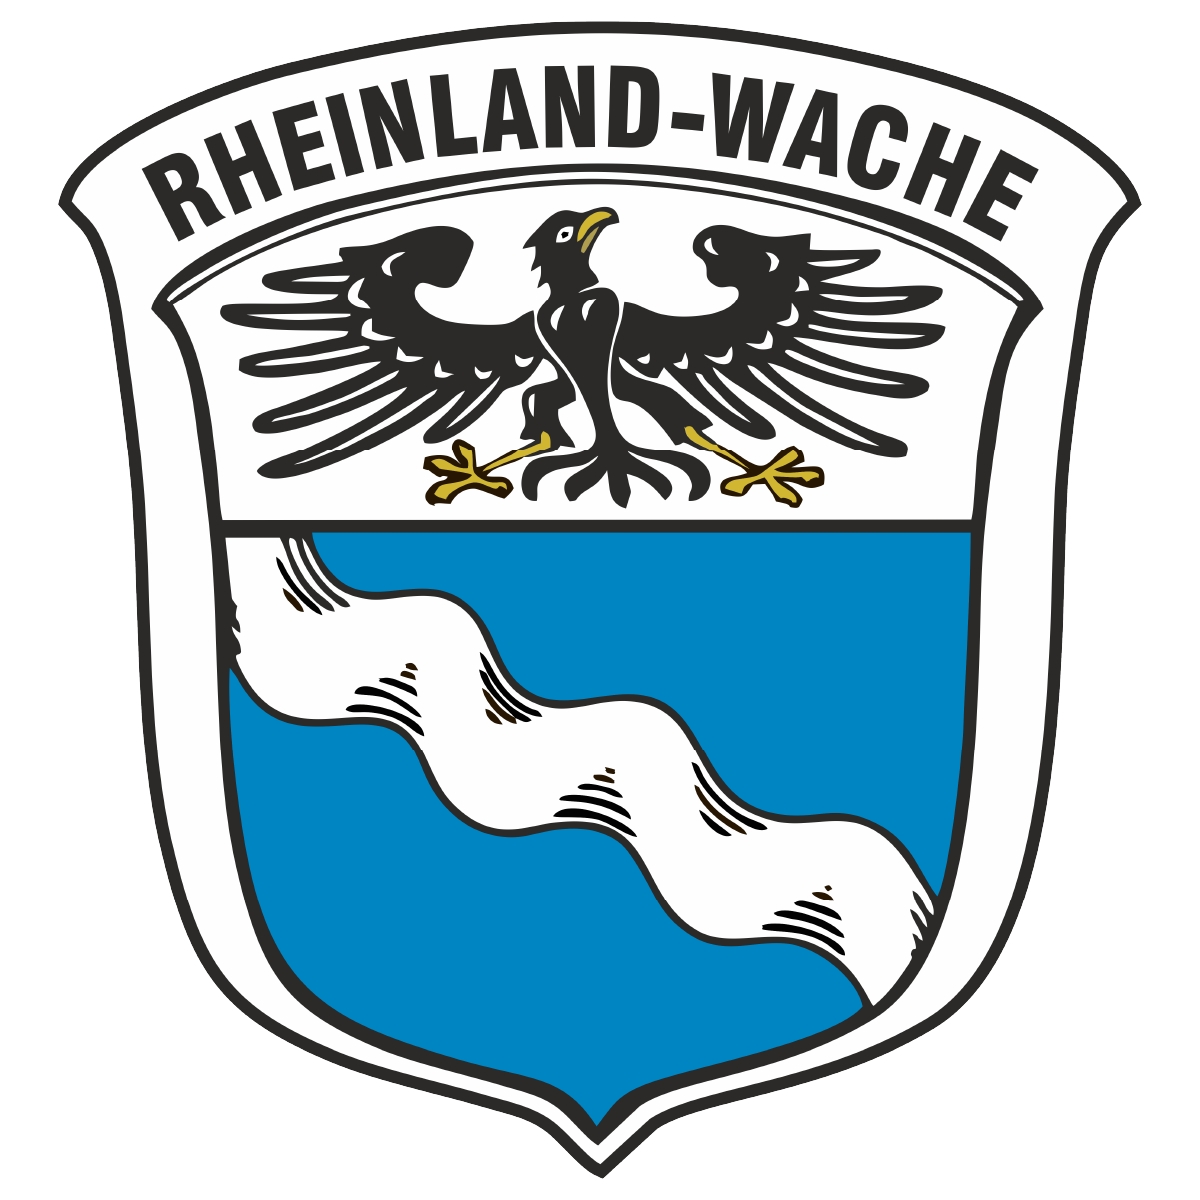 Rheinland-Wache